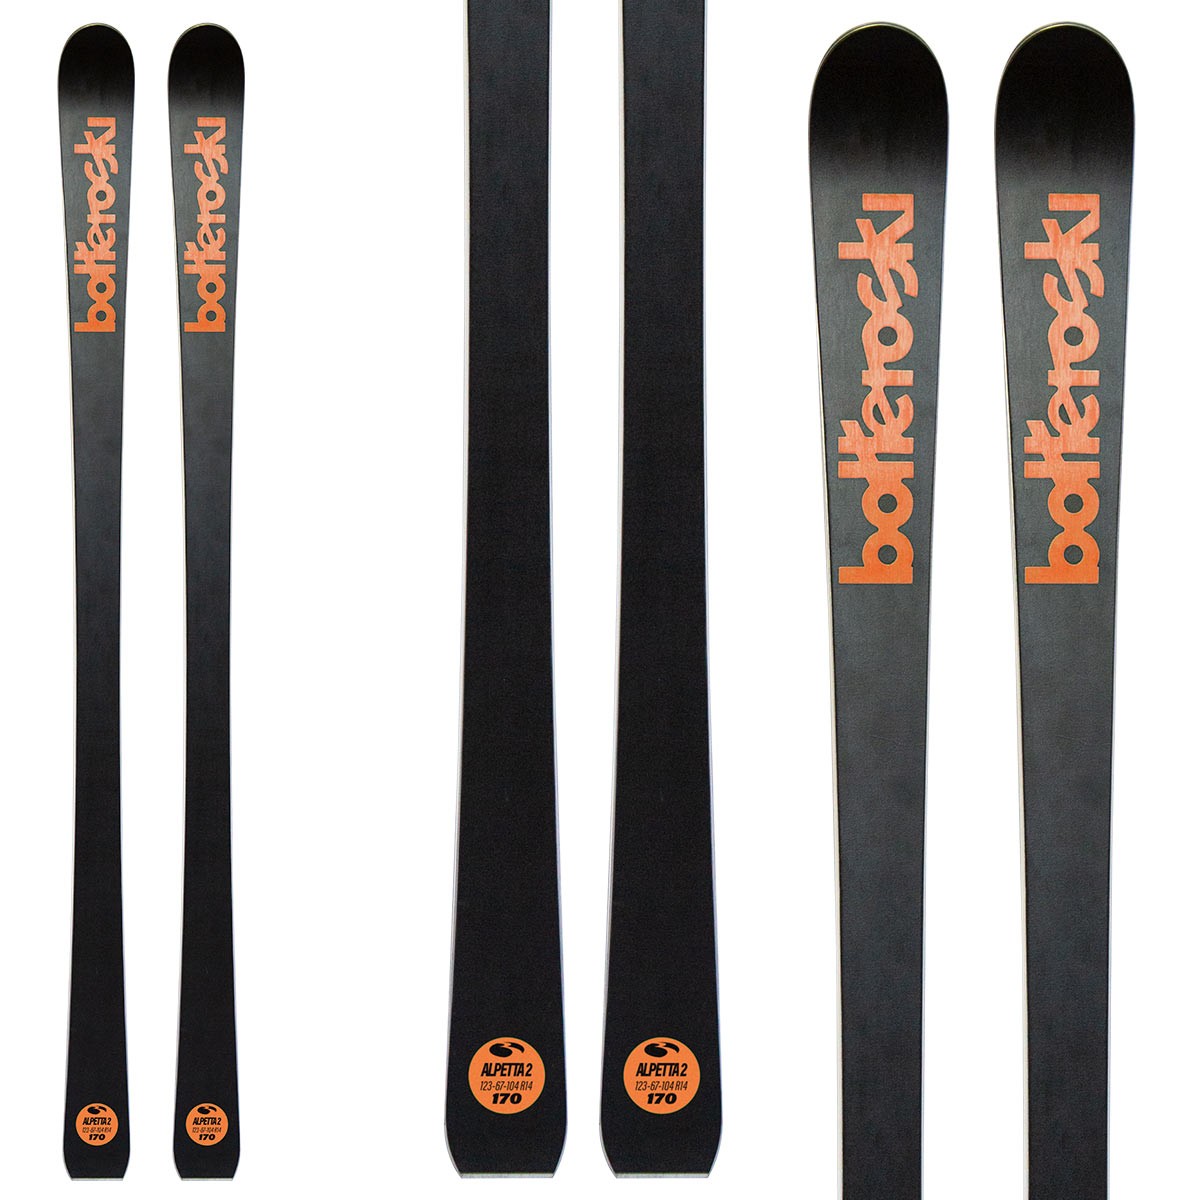  Sci Bottero Ski Alpetta 2 con attacchi VIst Vss412 con piastra Speedspacer (Colore: nero-arancio, Taglia: 159) 